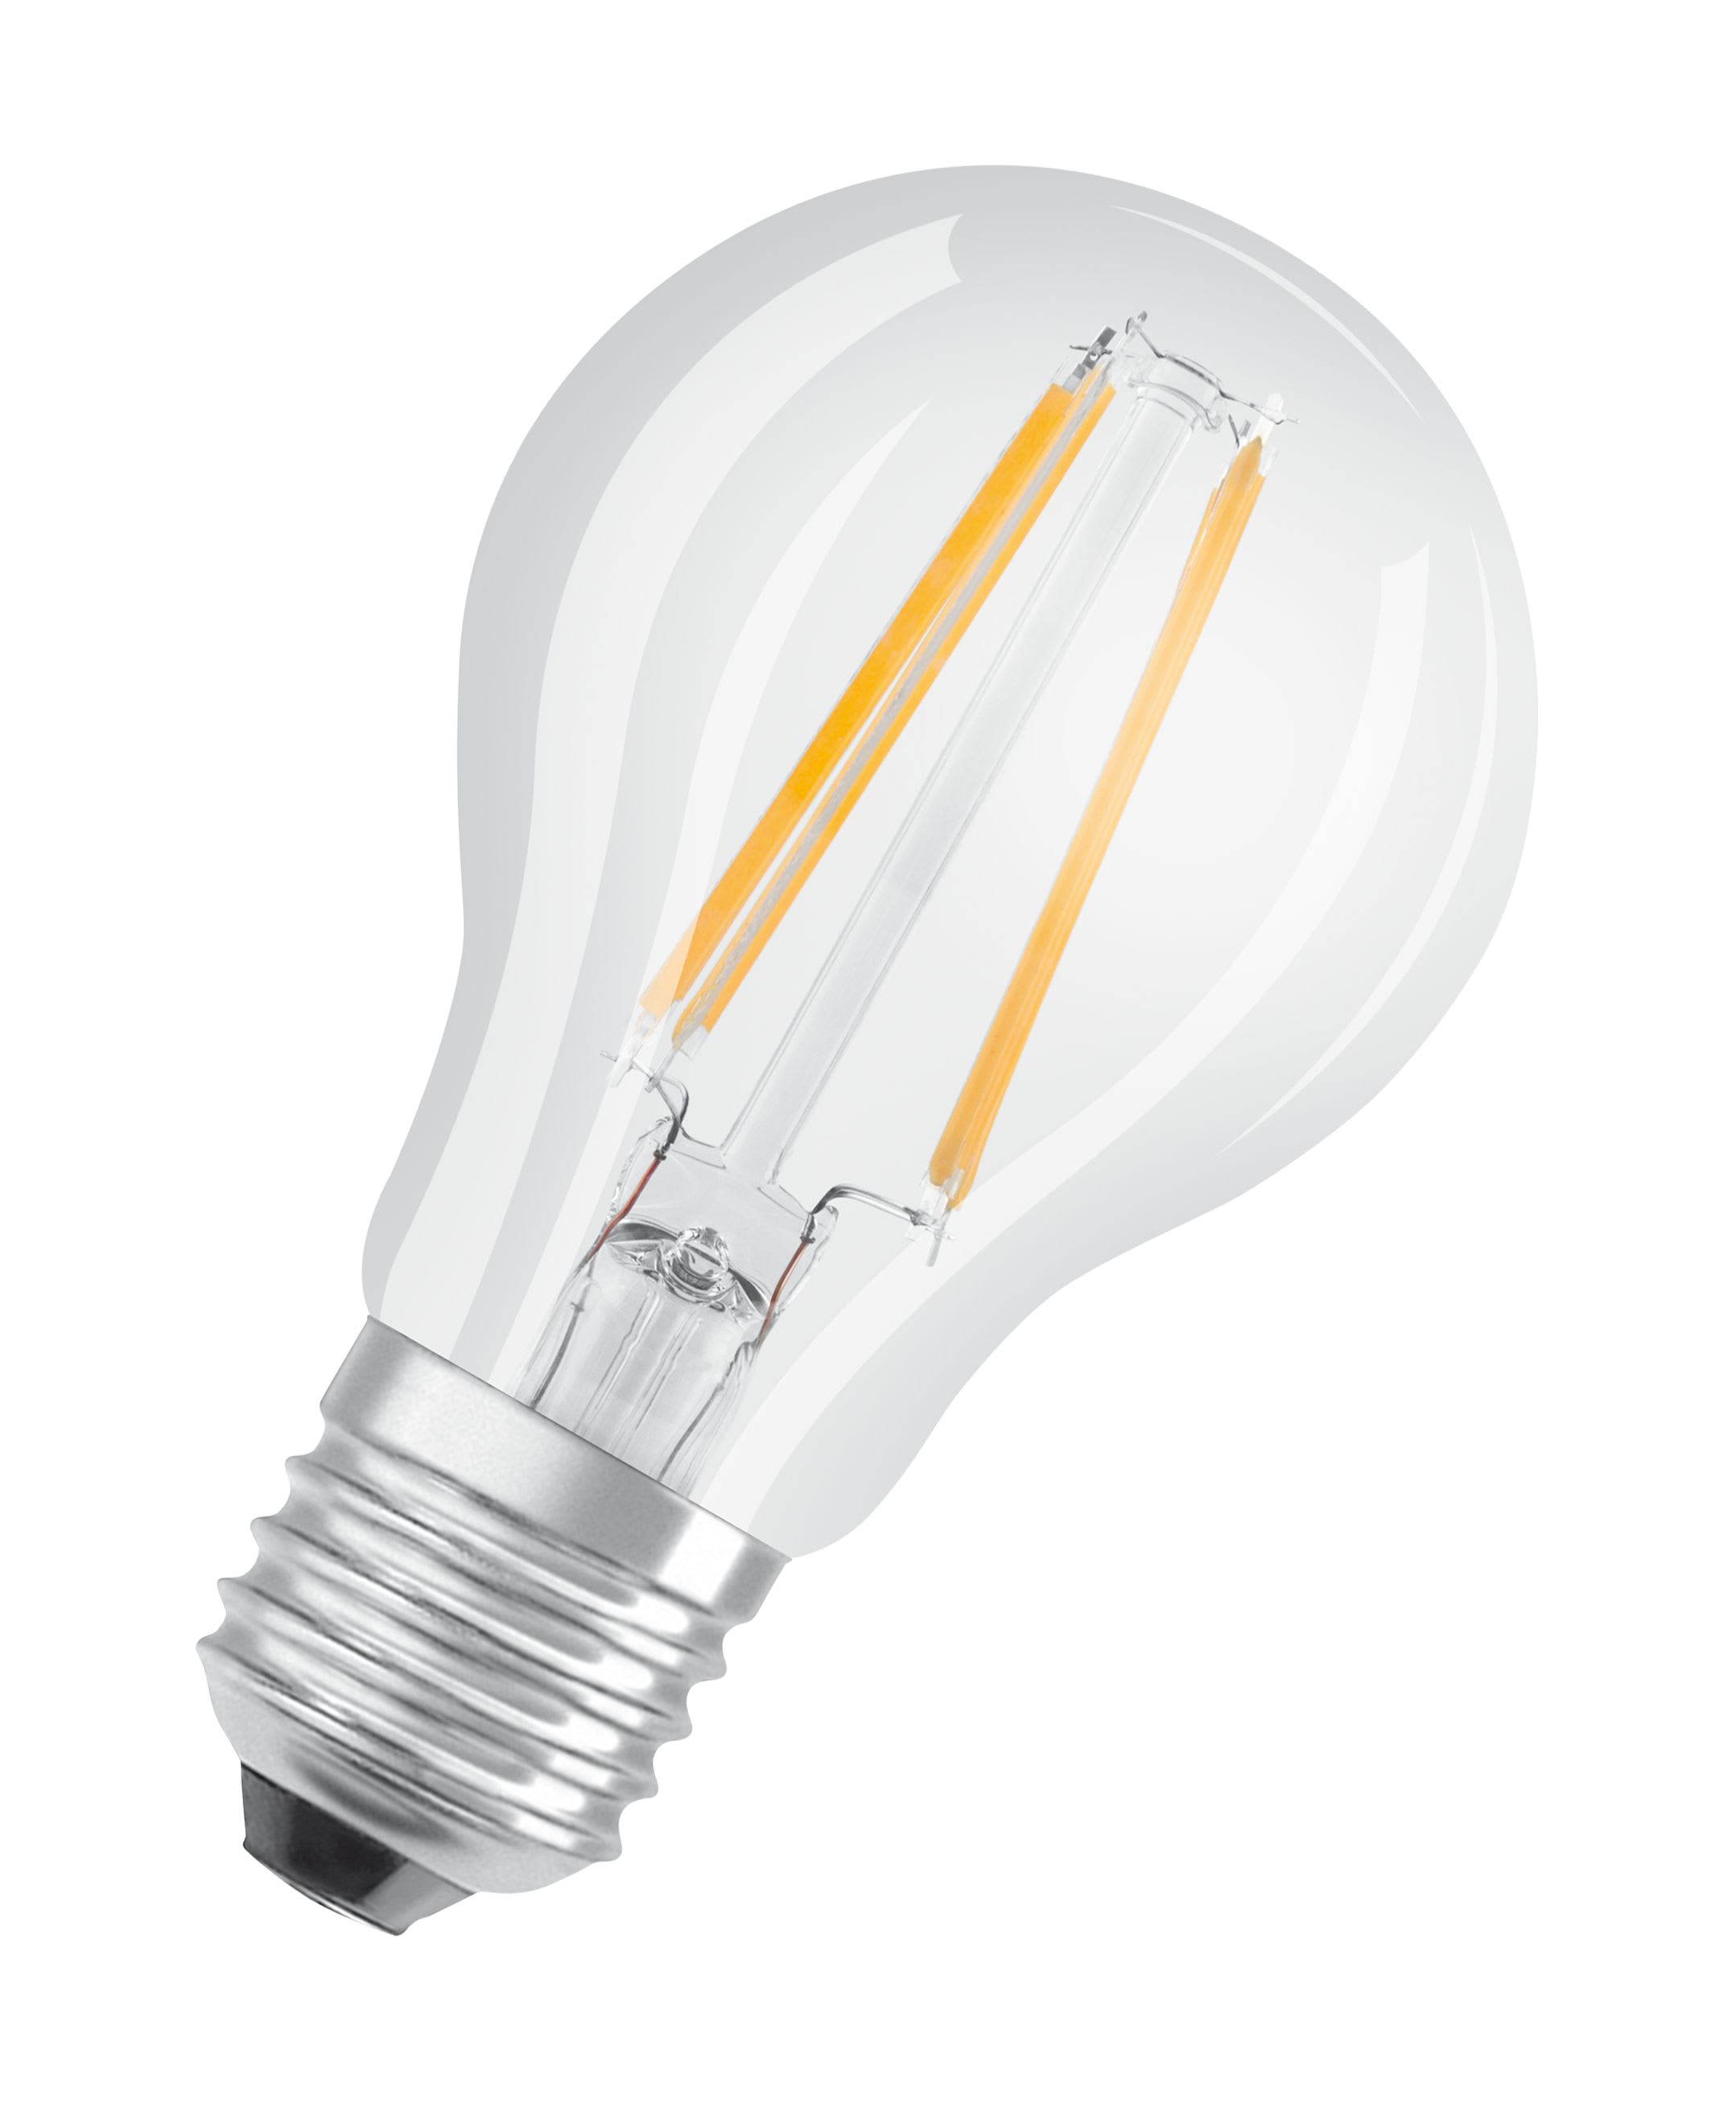 Ampoule Edison filament LED GIRARD SUDRON, Lampe SUDRON VINTAGE 715992